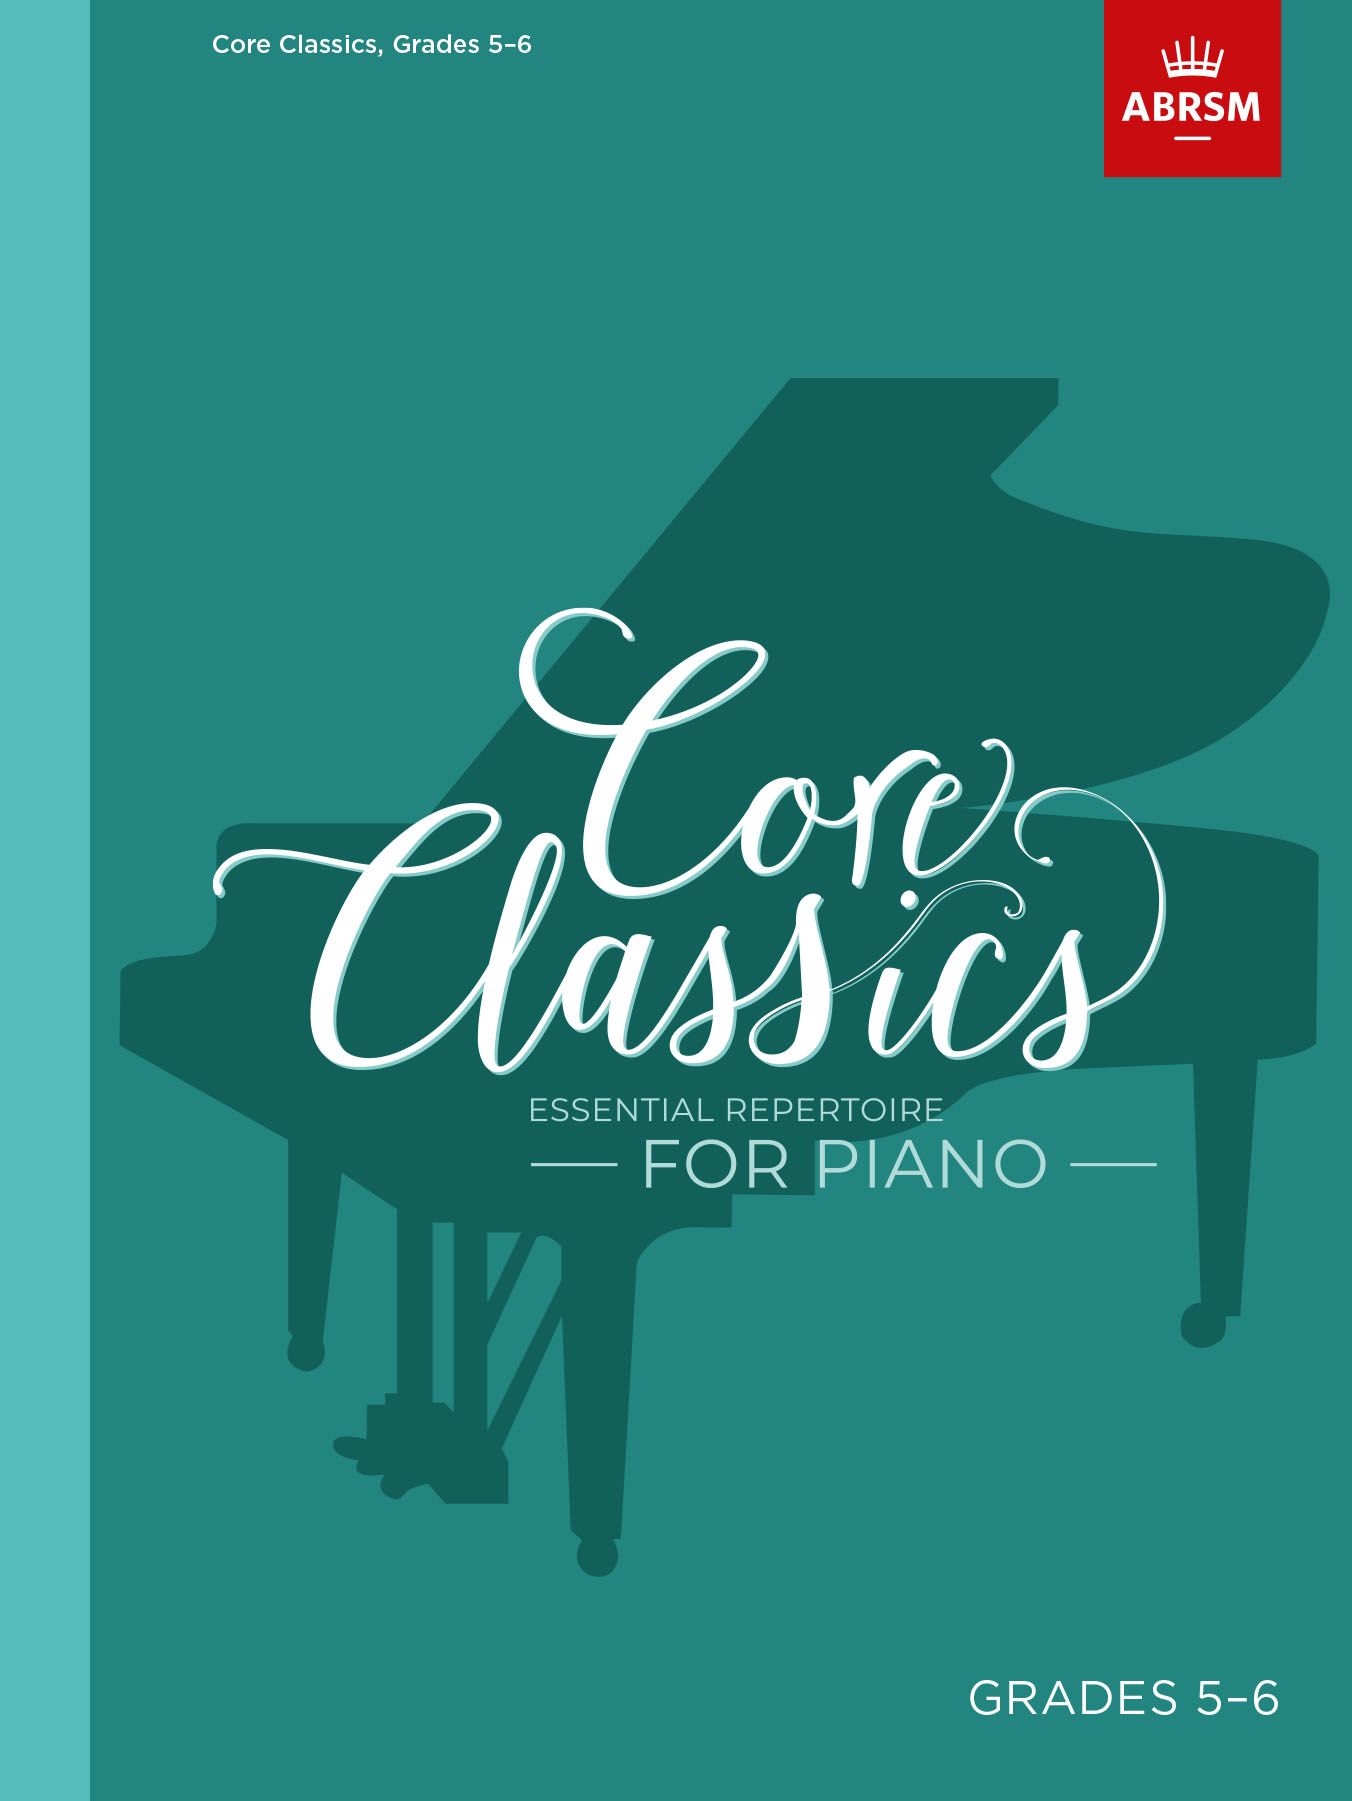 Core Classics - Grades 5-6: Essential Repertoire for Piano